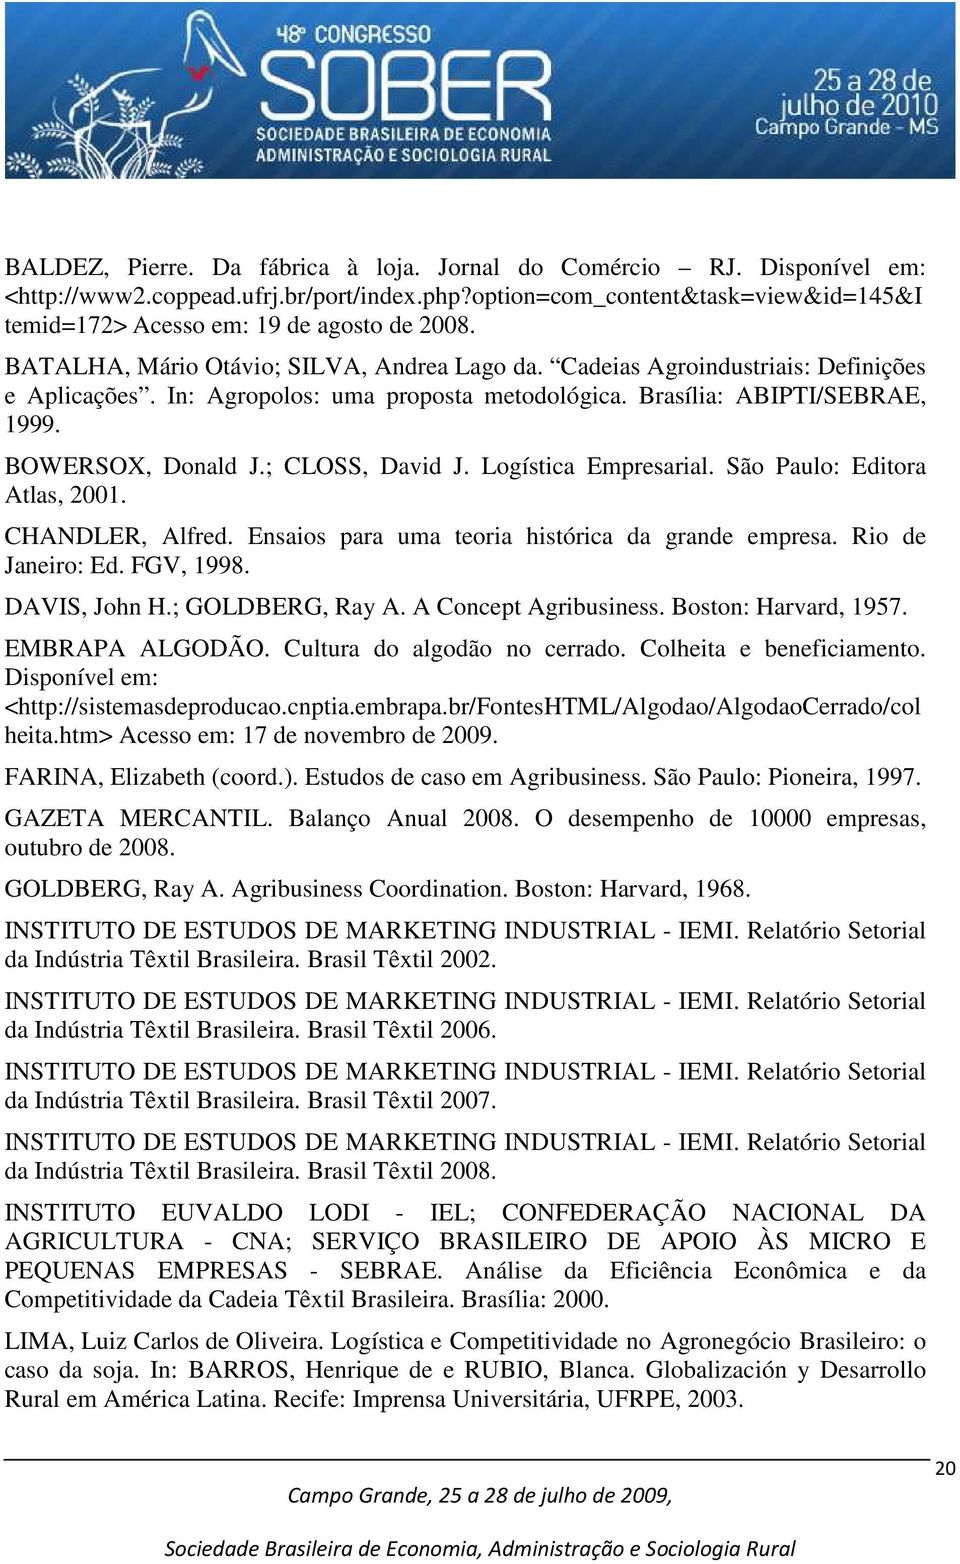 ; CLOSS, David J. Logística Empresarial. São Paulo: Editora Atlas, 2001. CHANDLER, Alfred. Ensaios para uma teoria histórica da grande empresa. Rio de Janeiro: Ed. FGV, 1998. DAVIS, John H.